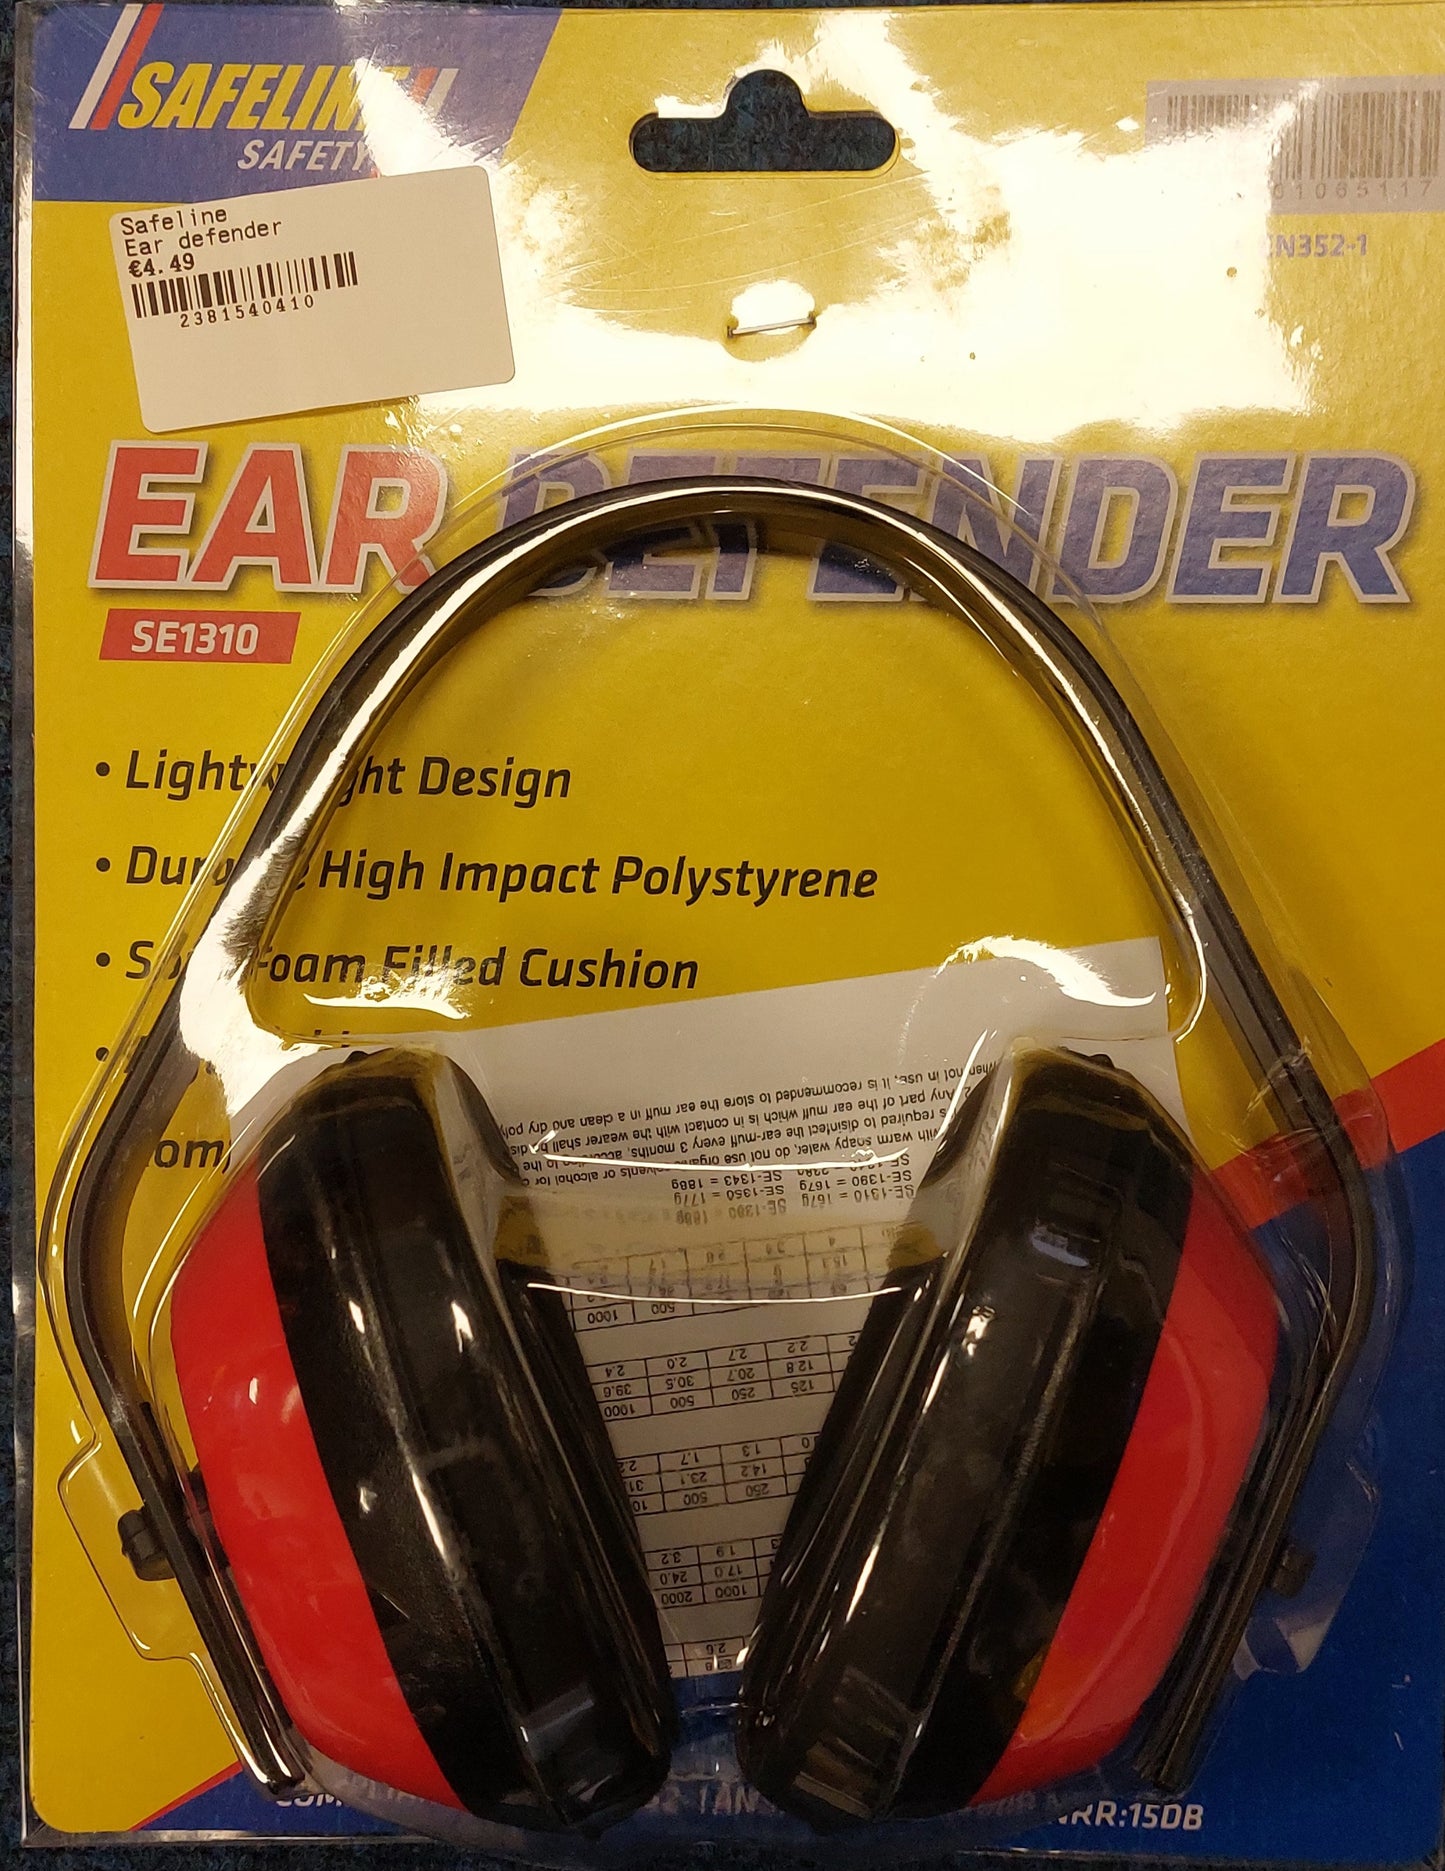 SAFELINE EAR DEFENDER